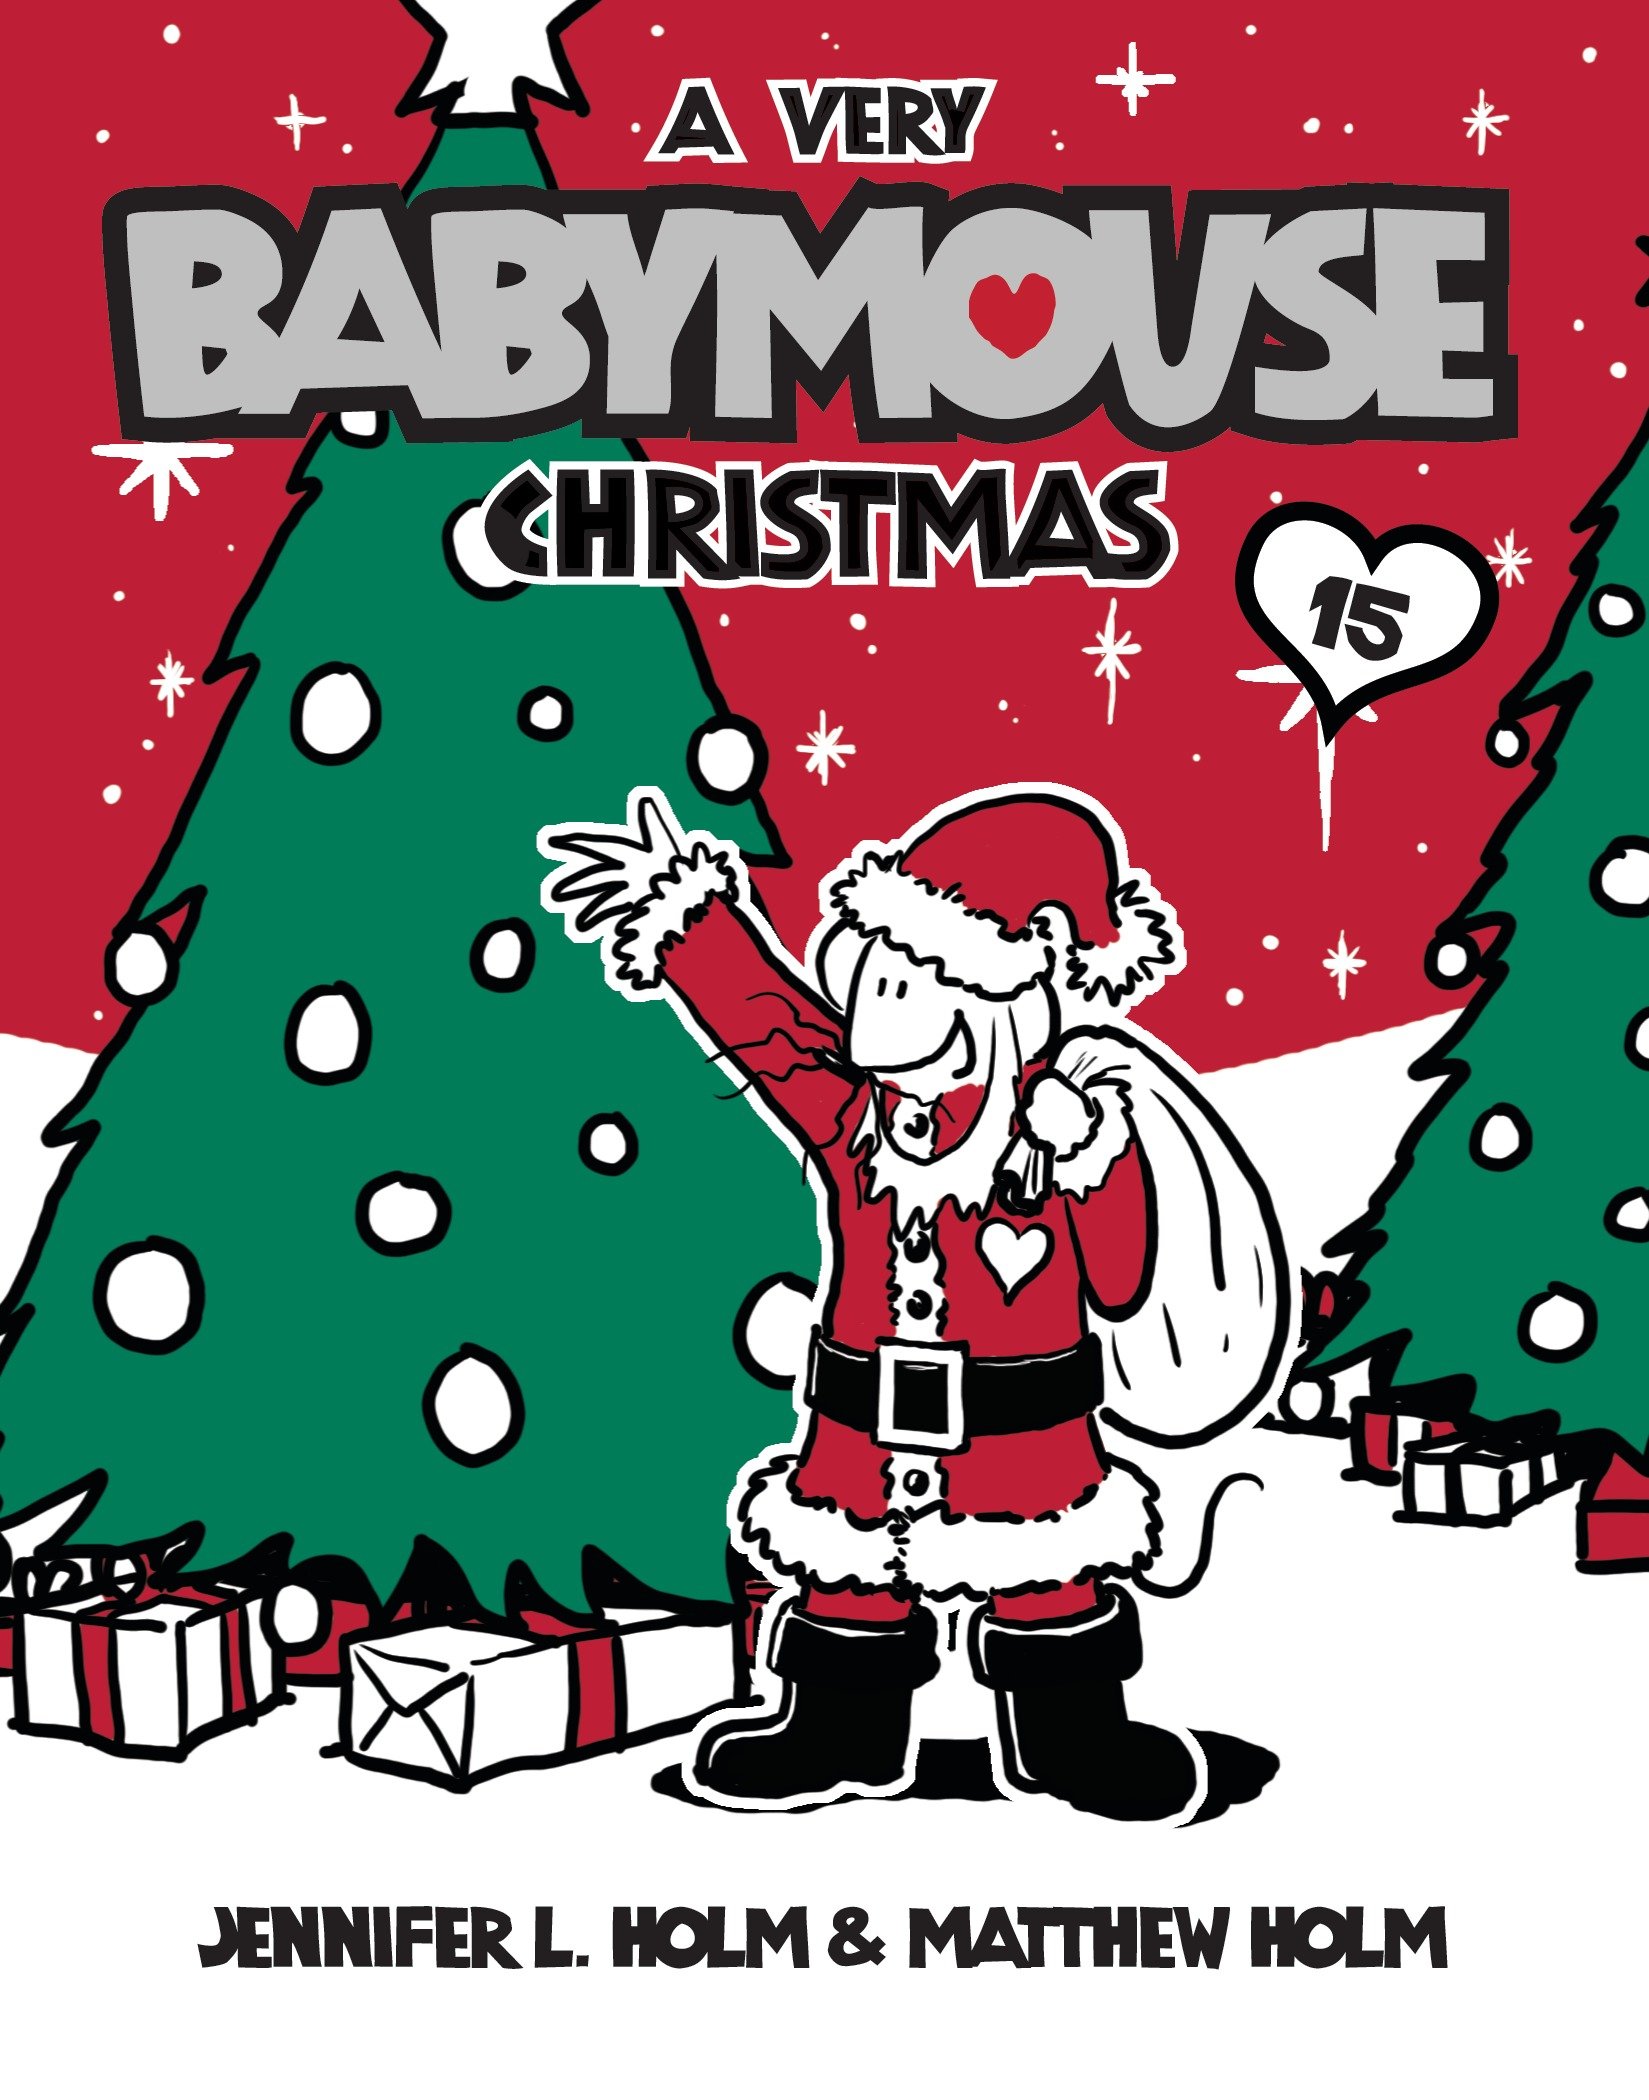 Babymouse Christmas 15